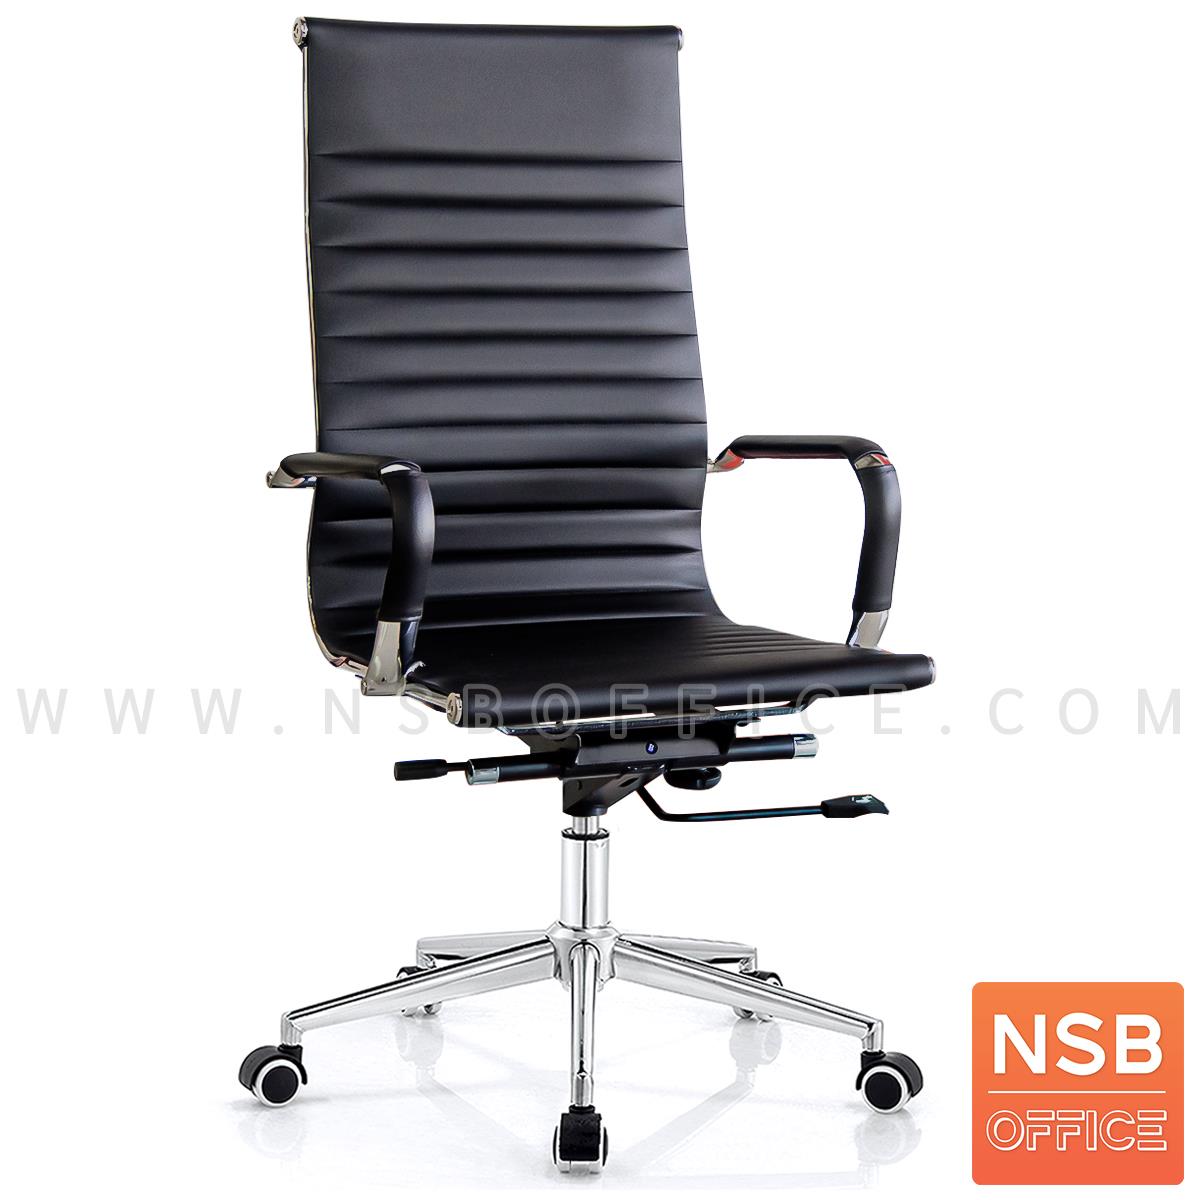 B01A538:เก้าอี้ผู้บริหาร รุ่น Nairobi (ไนโรบี)  โช๊คแก๊ส ก้อนโยก ขาเหล็กชุบโครเมี่ยม 